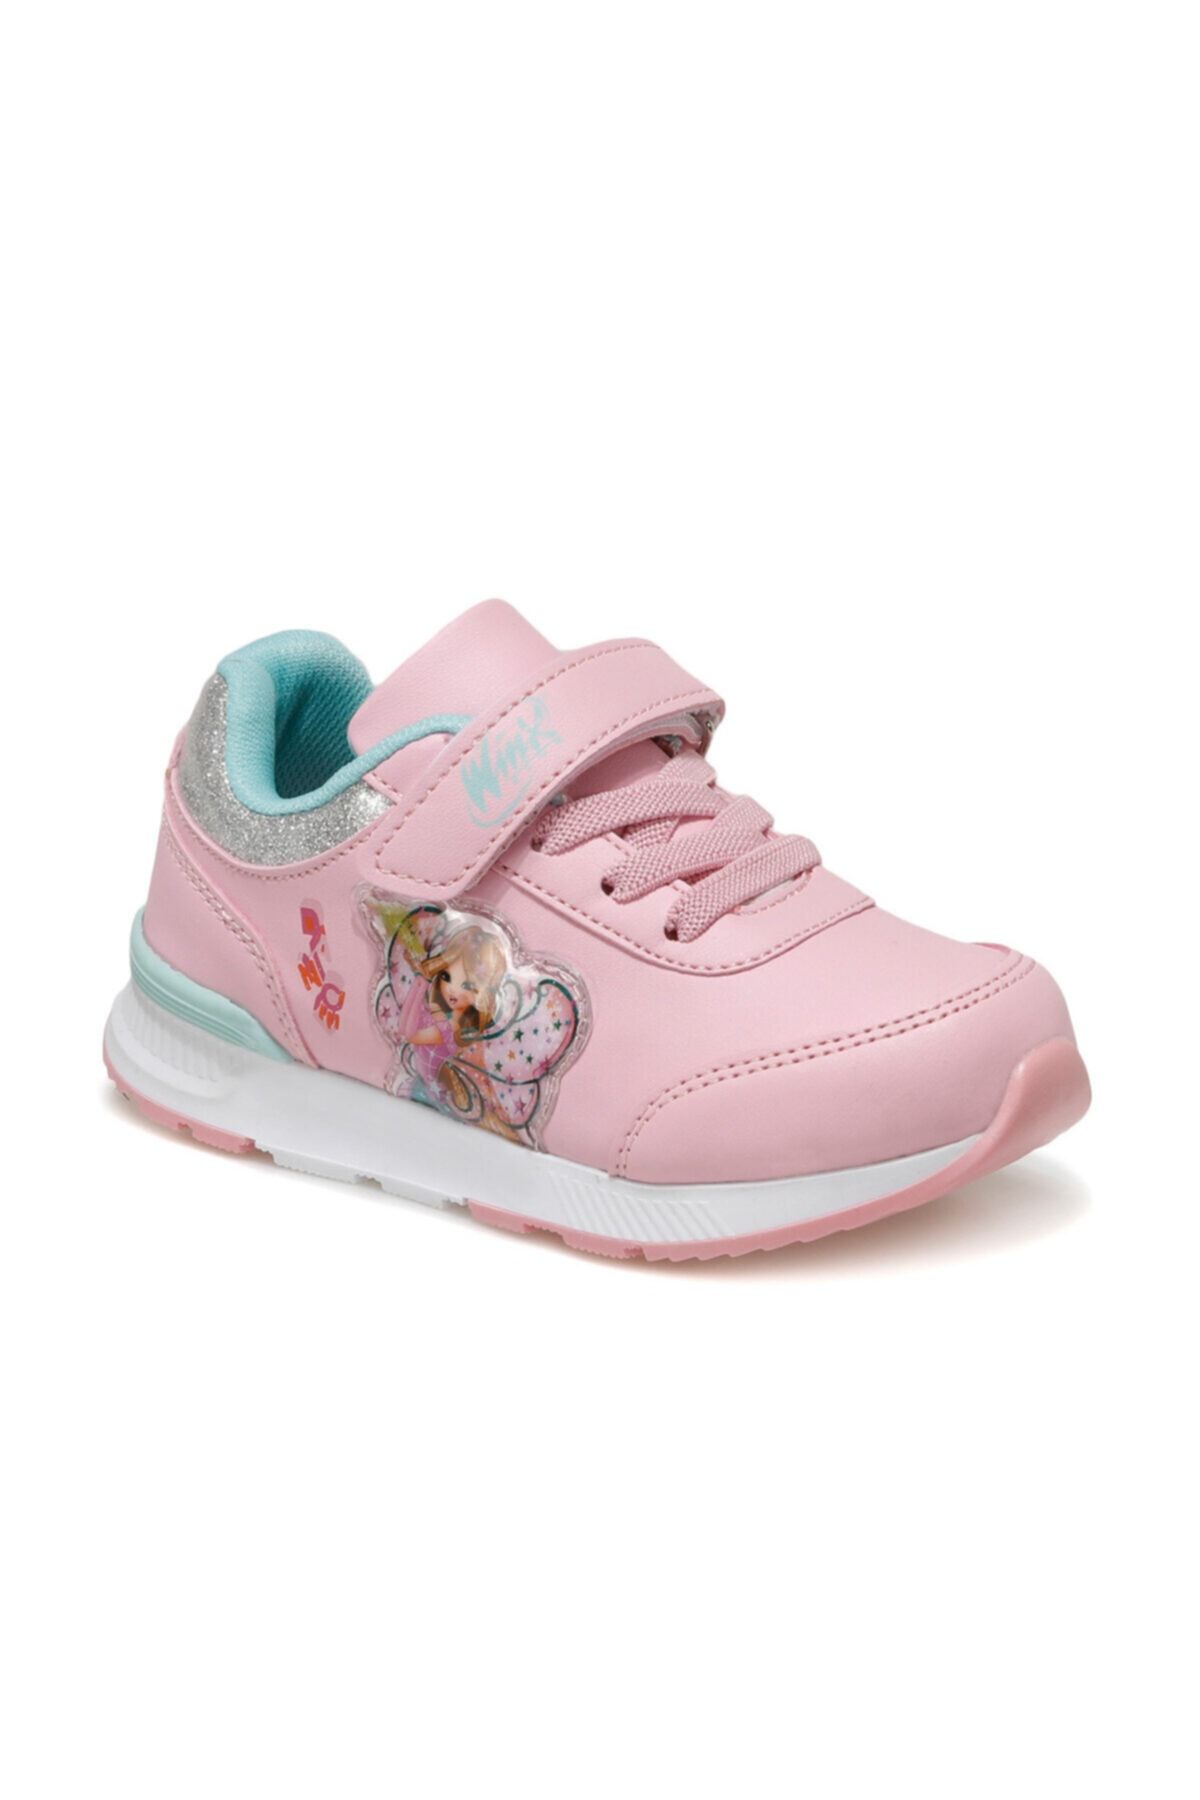 Winx DENY.P Pembe Kız Çocuk Sneaker Ayakkabı 100561431